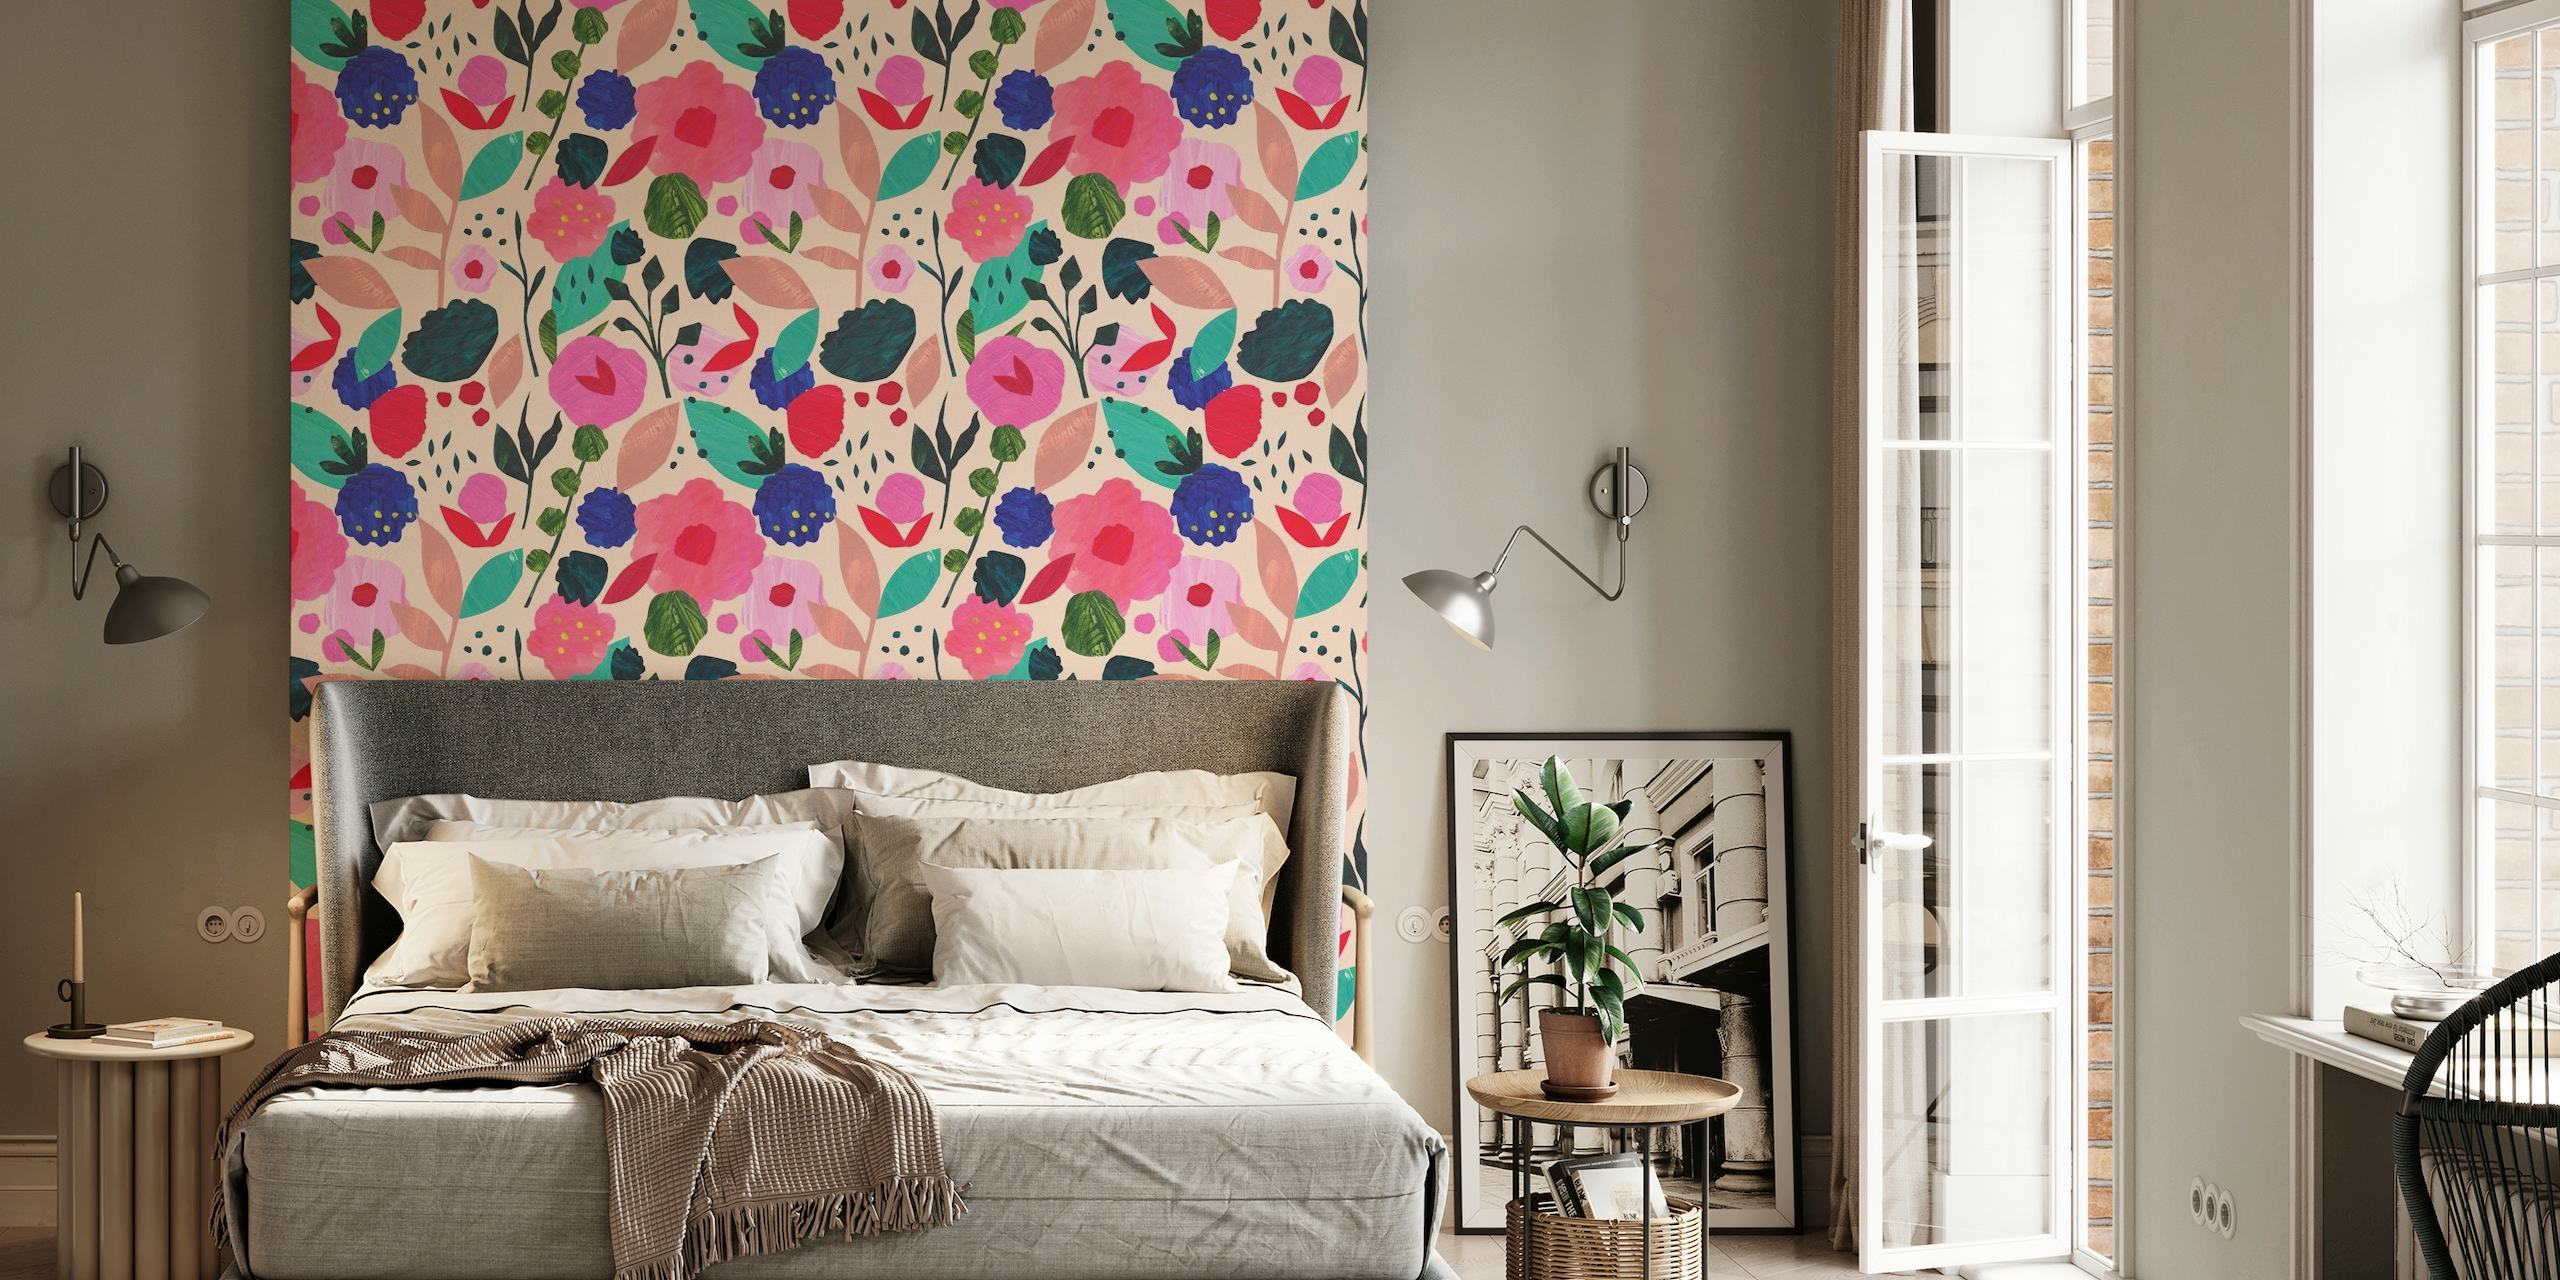 Papier peint mural à motif de collage floral coloré avec des fleurs roses, bleues et violettes sur fond crème